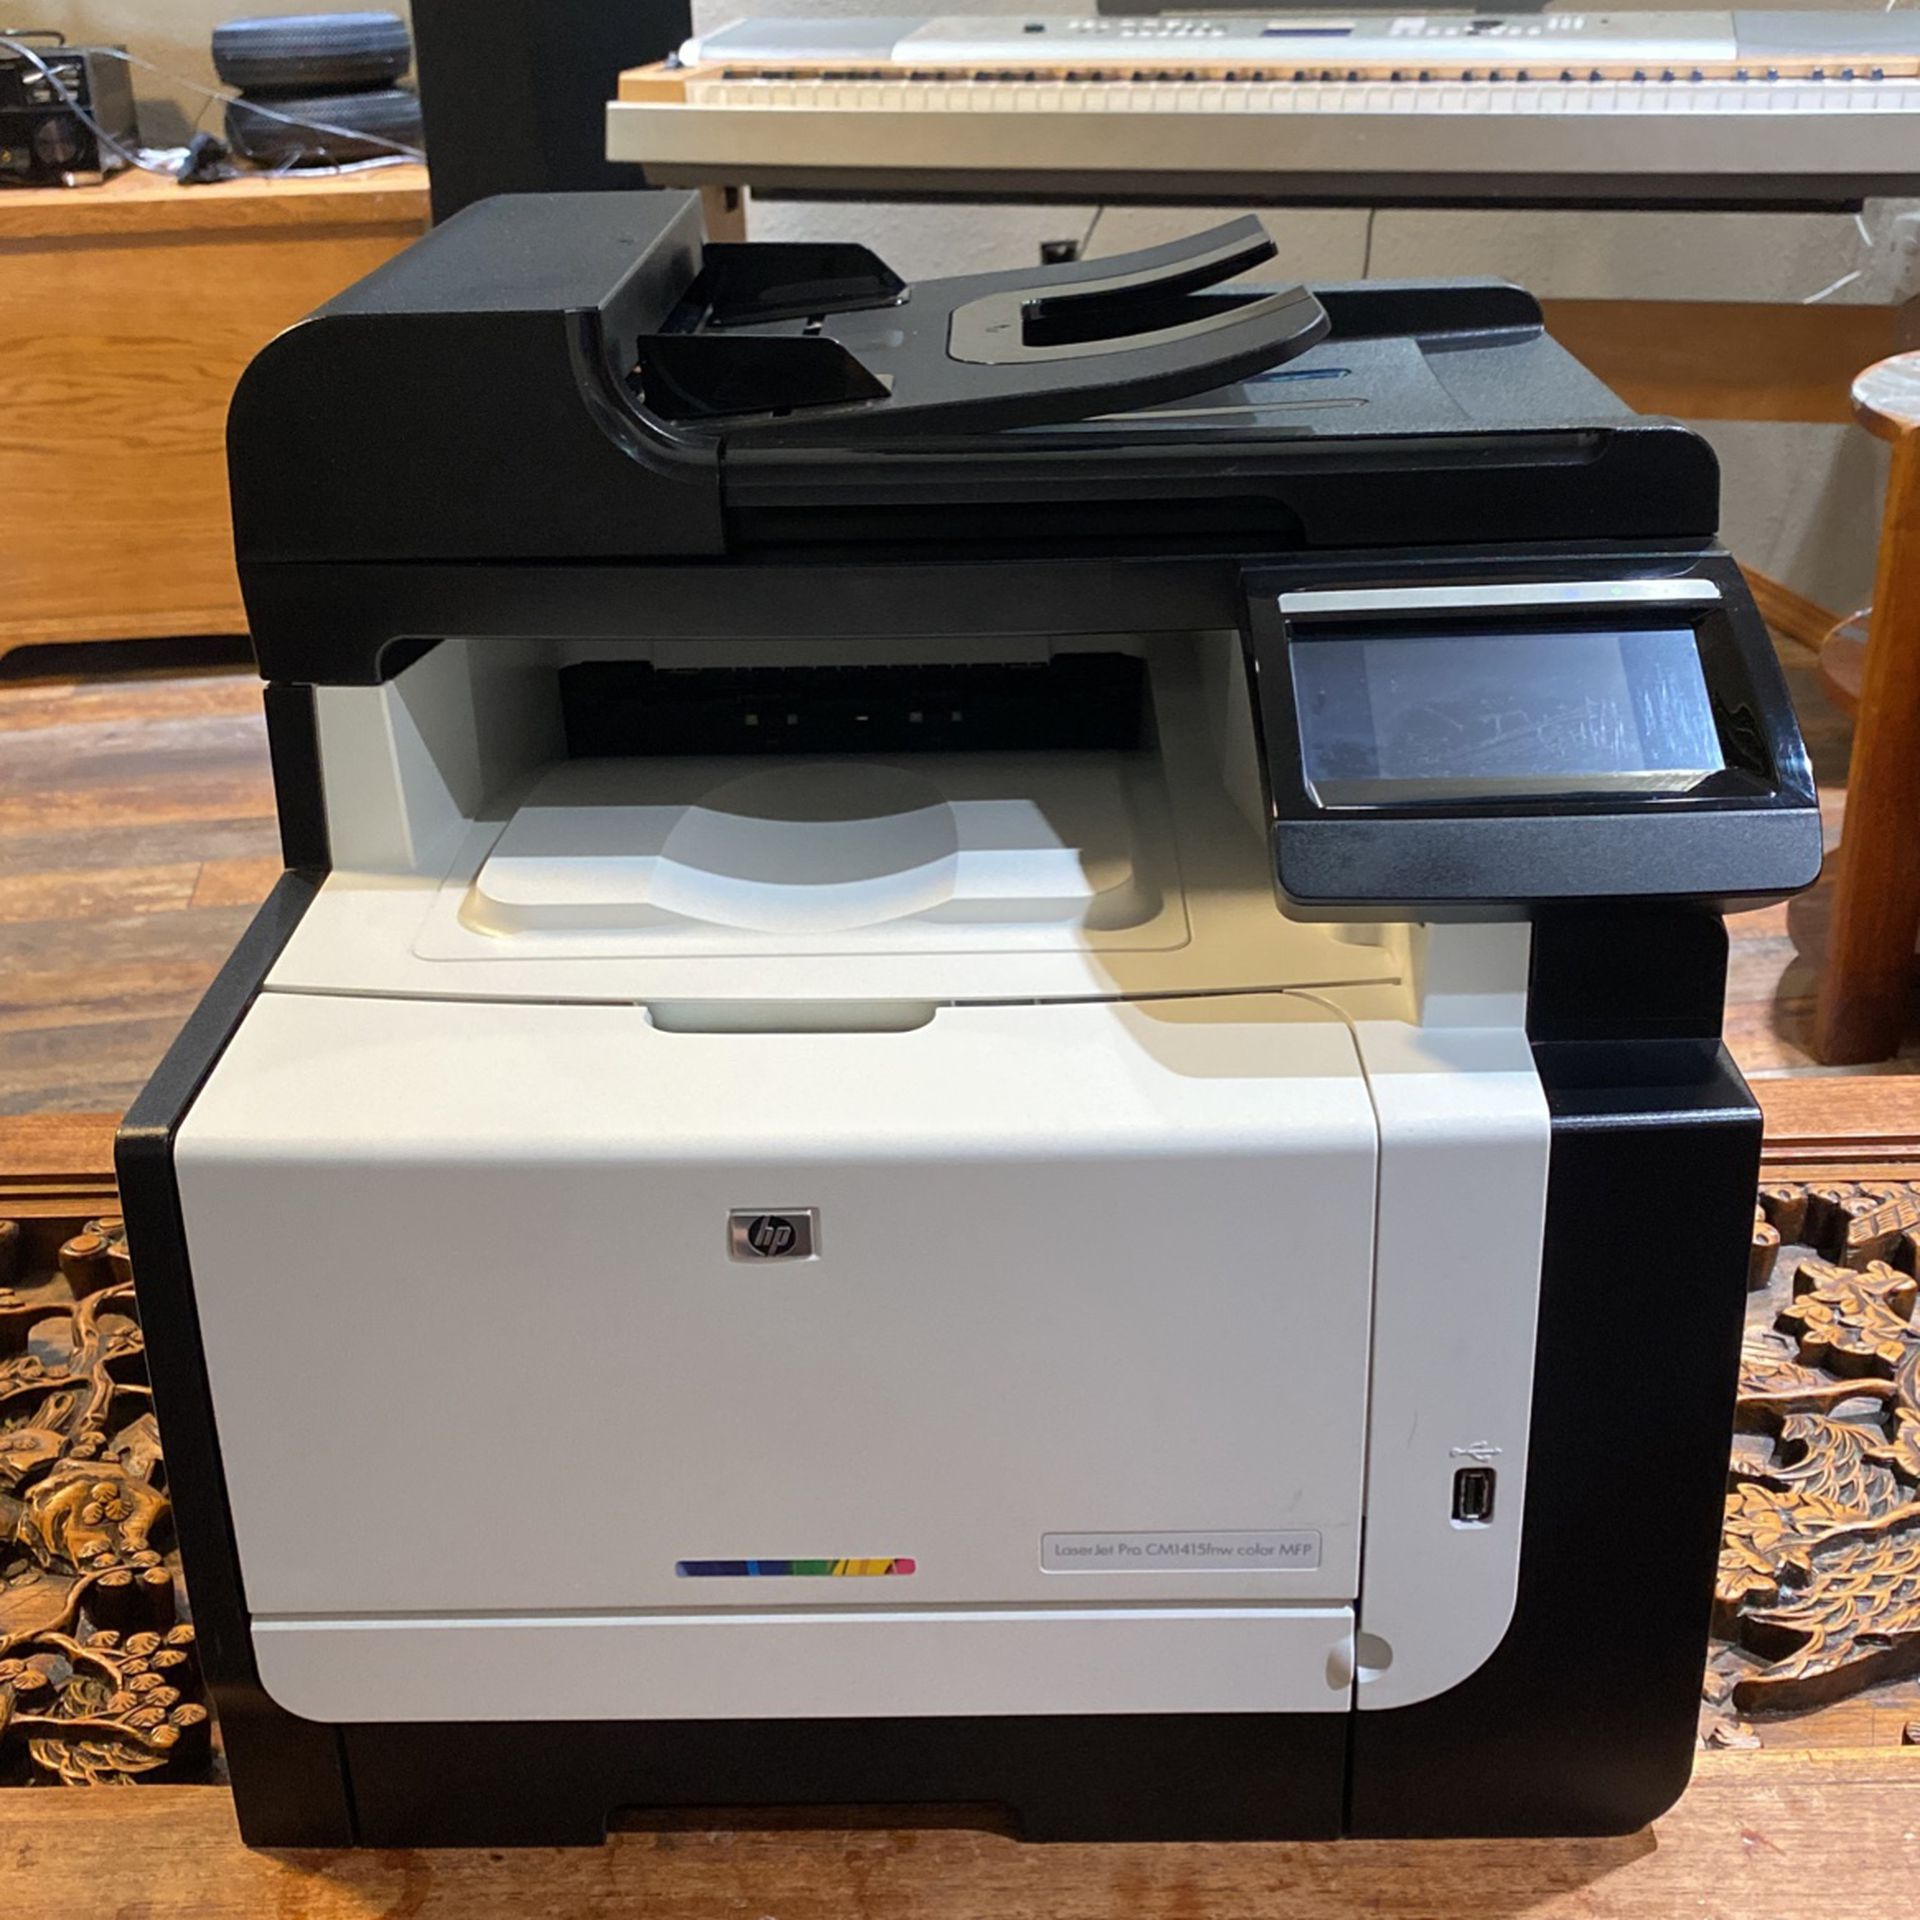 LaserJet Pro CM1415fnw color MFP [Printer] 